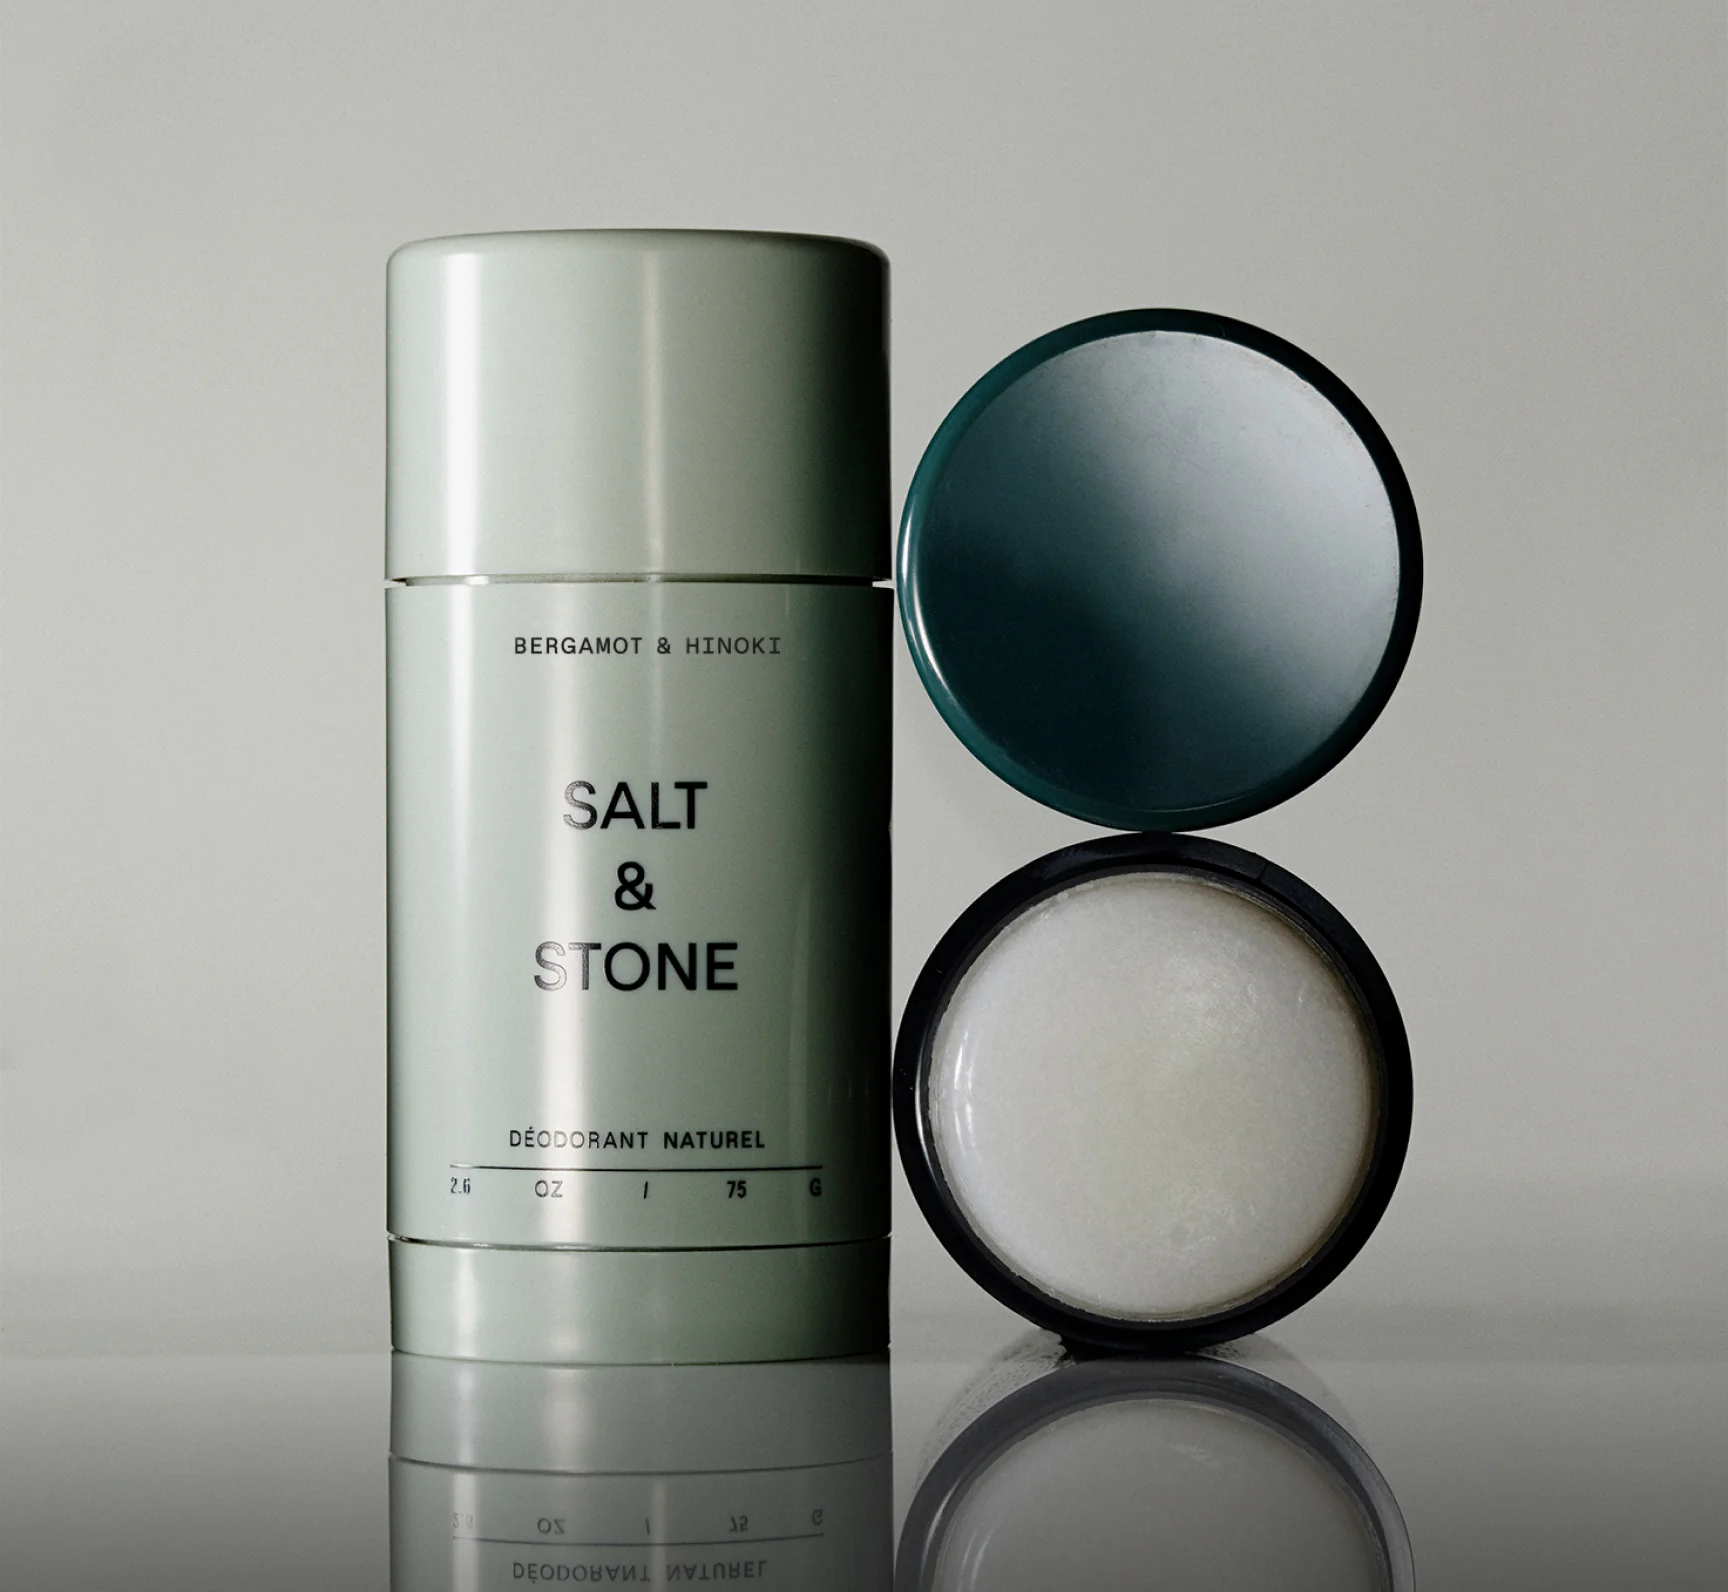 Salt & Stone naturaalne deodorant, Eucalyptus & Cedarwood Hooldusvahendid ja kosmeetika - HellyK - Kvaliteetsed lasteriided, villariided, barefoot jalatsid